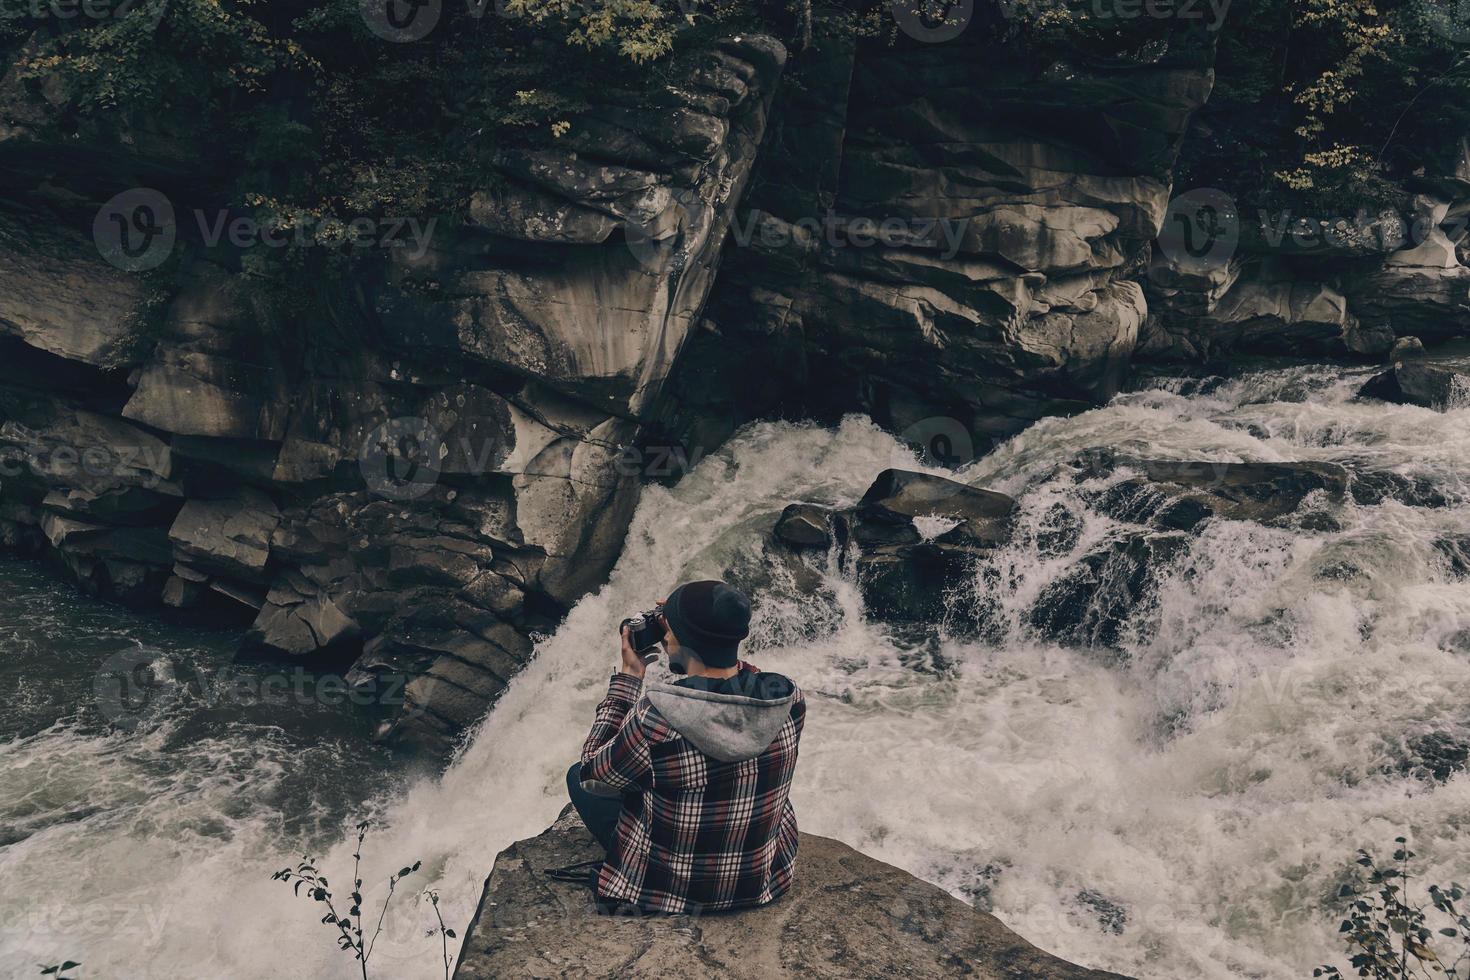 travail risqué. vue de dessus d'un jeune homme moderne photographiant assis sur le rocher avec la rivière en contrebas photo